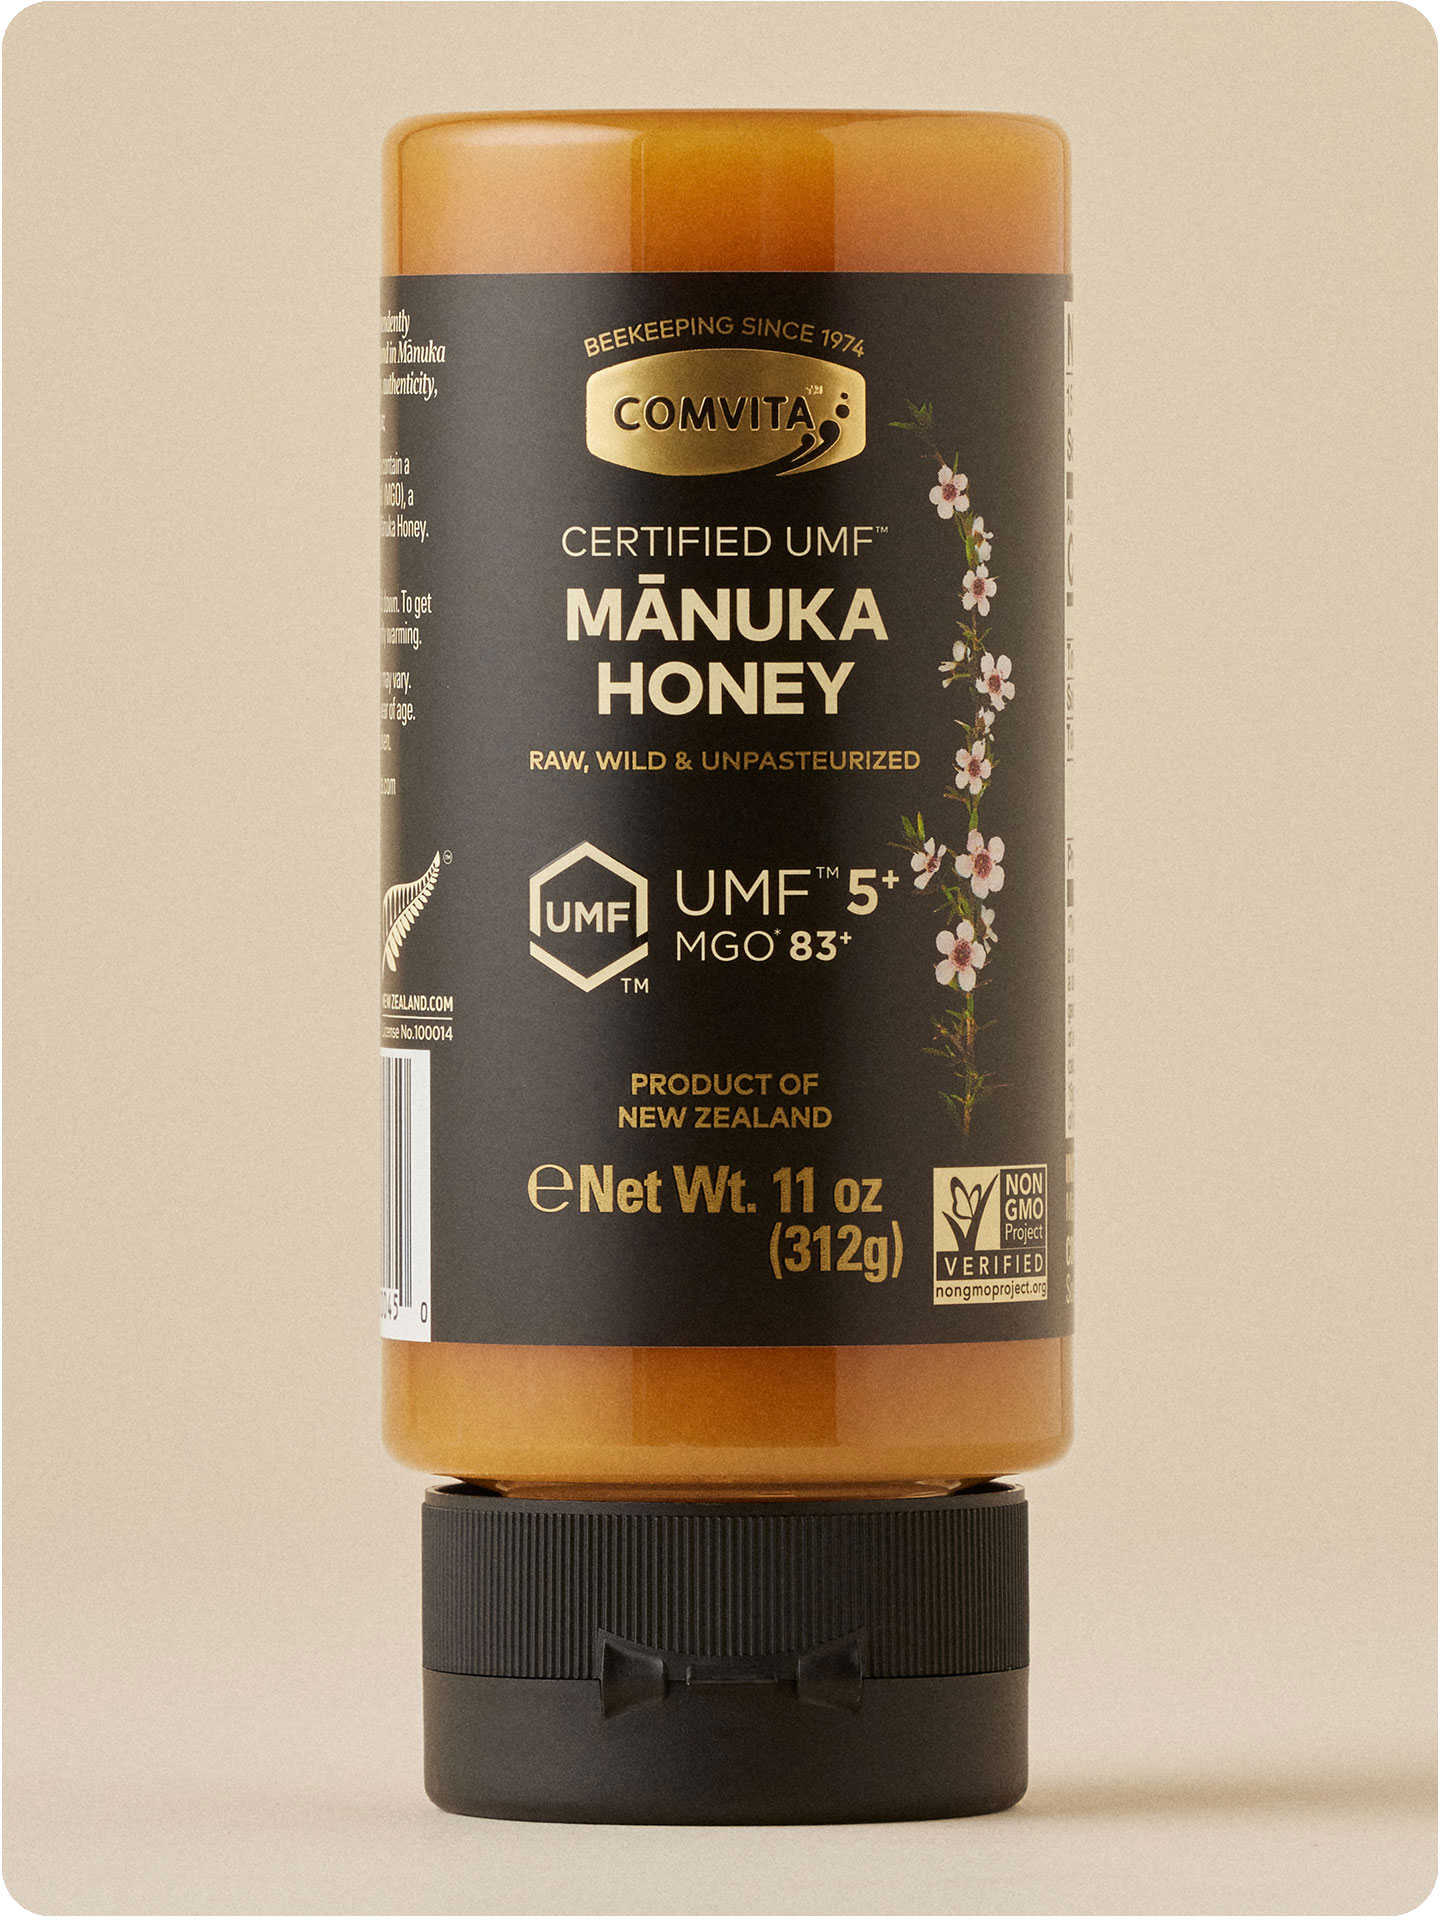 UMF 5+ Manuka Honey Squeeze Bottle